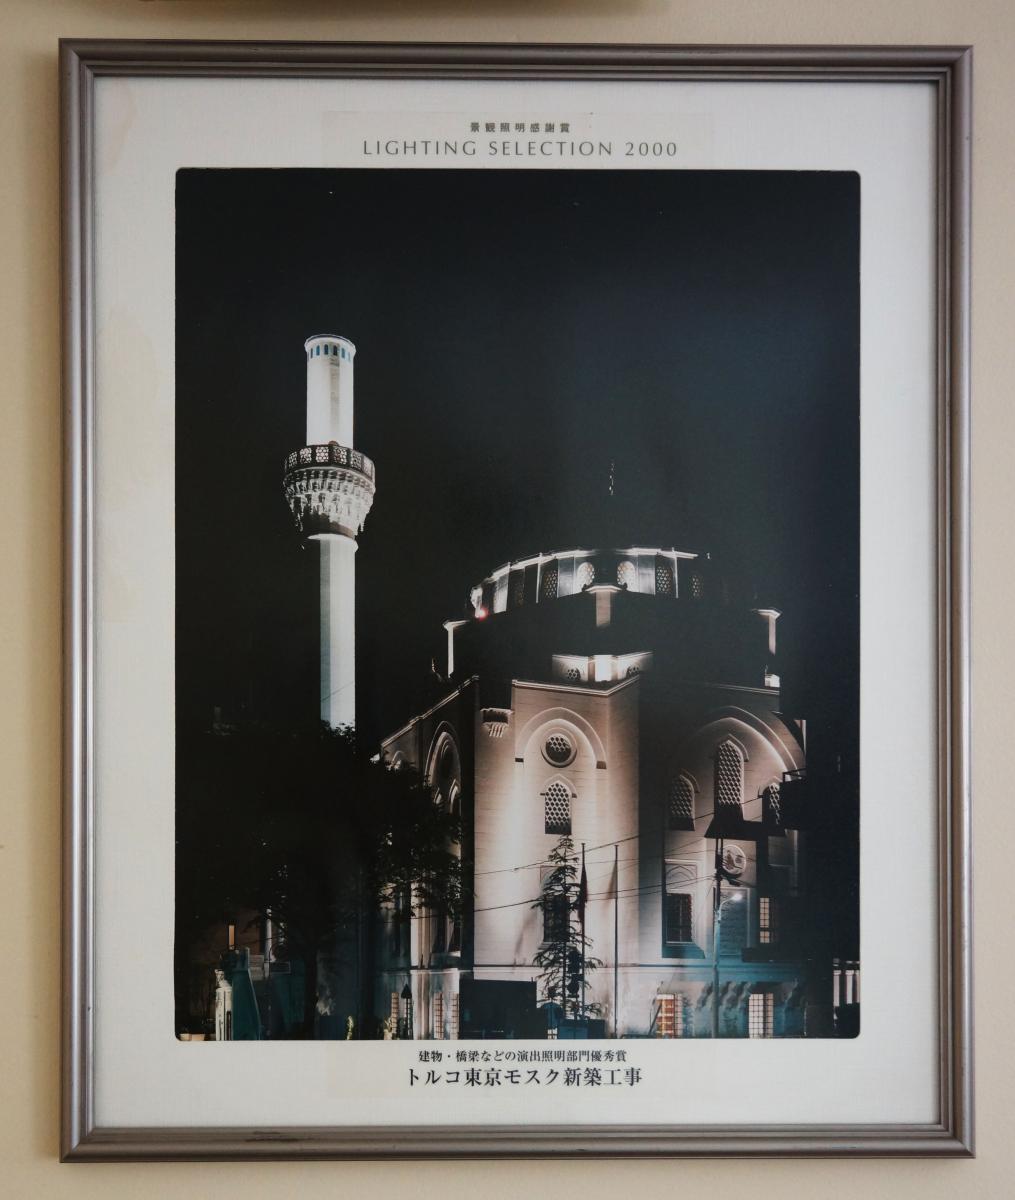 Tokyo Camii Mosque